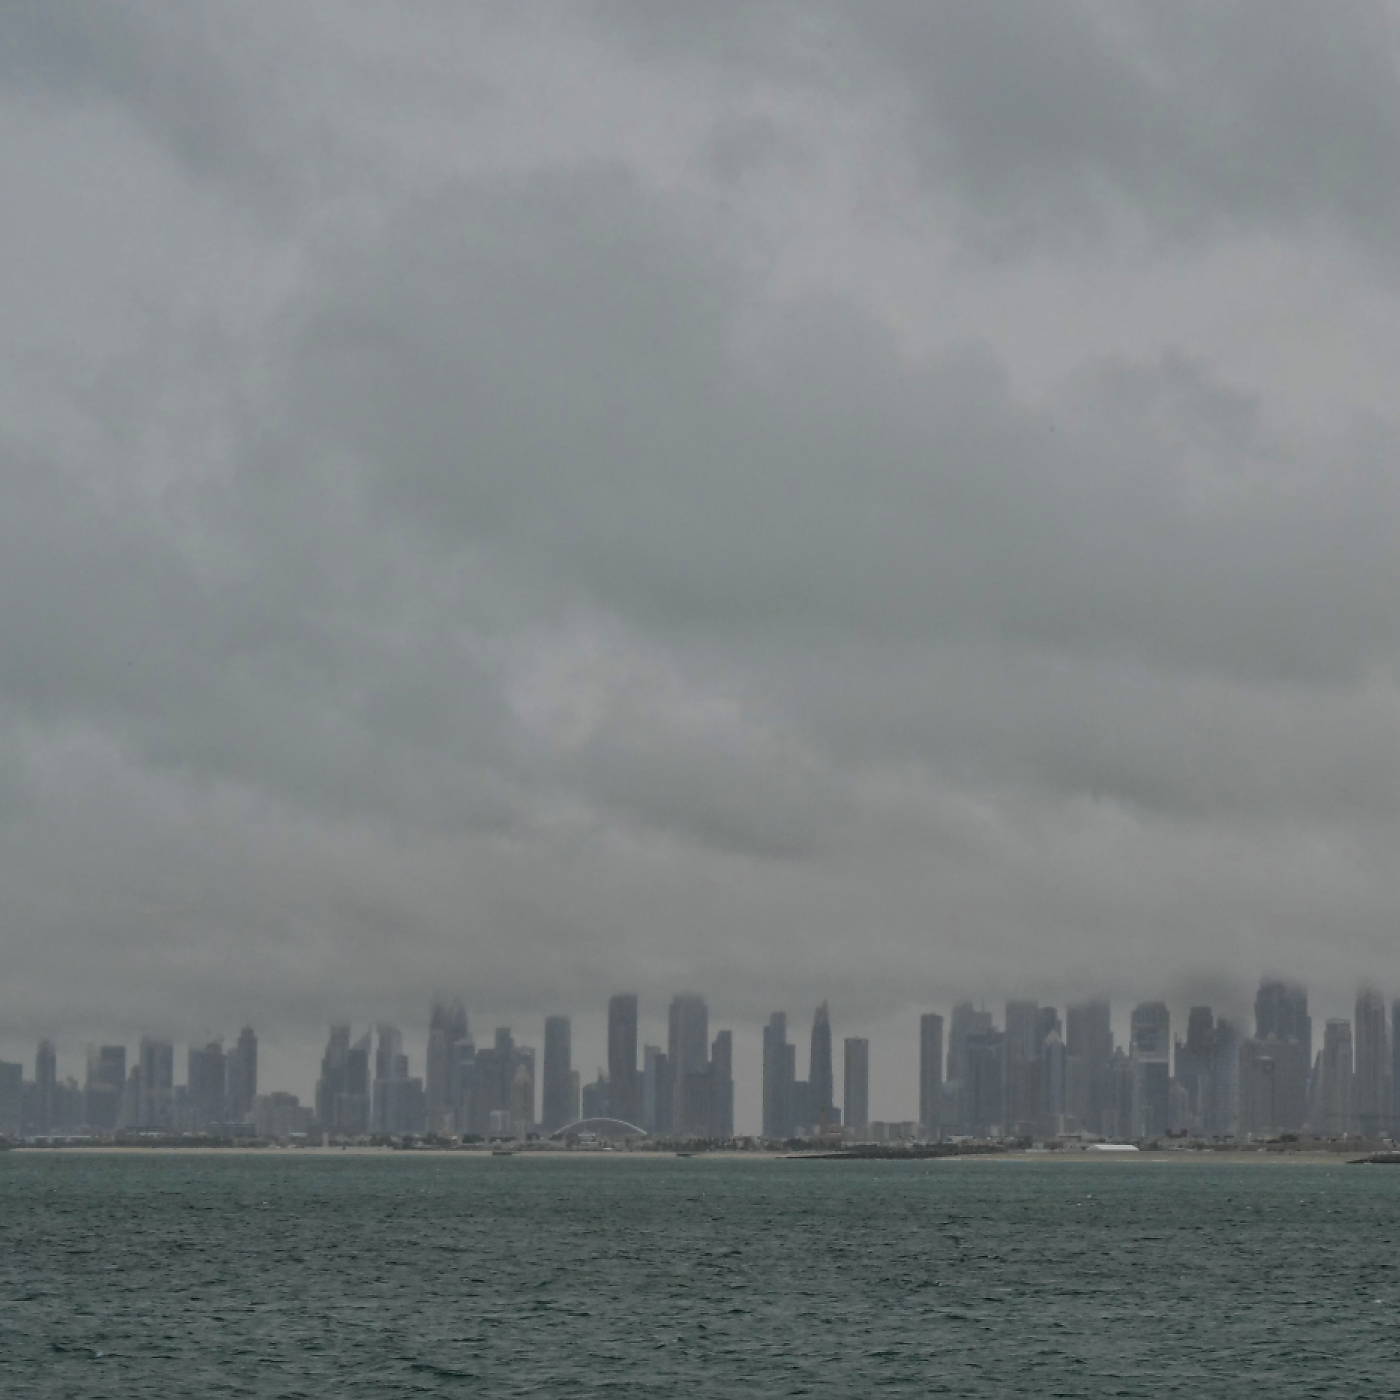 emirate erneut von starkregen betroffen